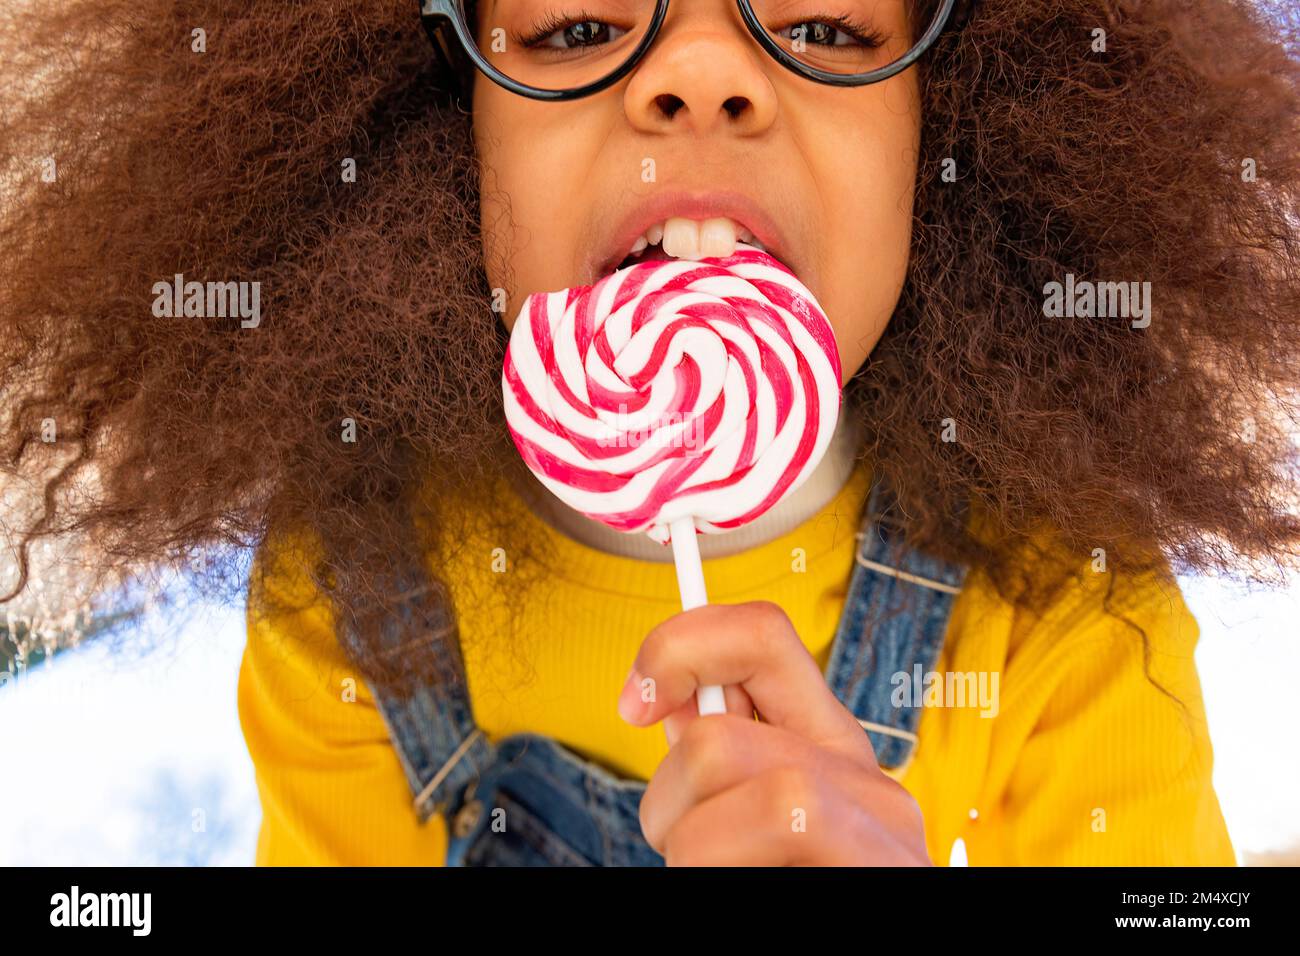 Girl with buck teeth eating lollipop Stock Photo